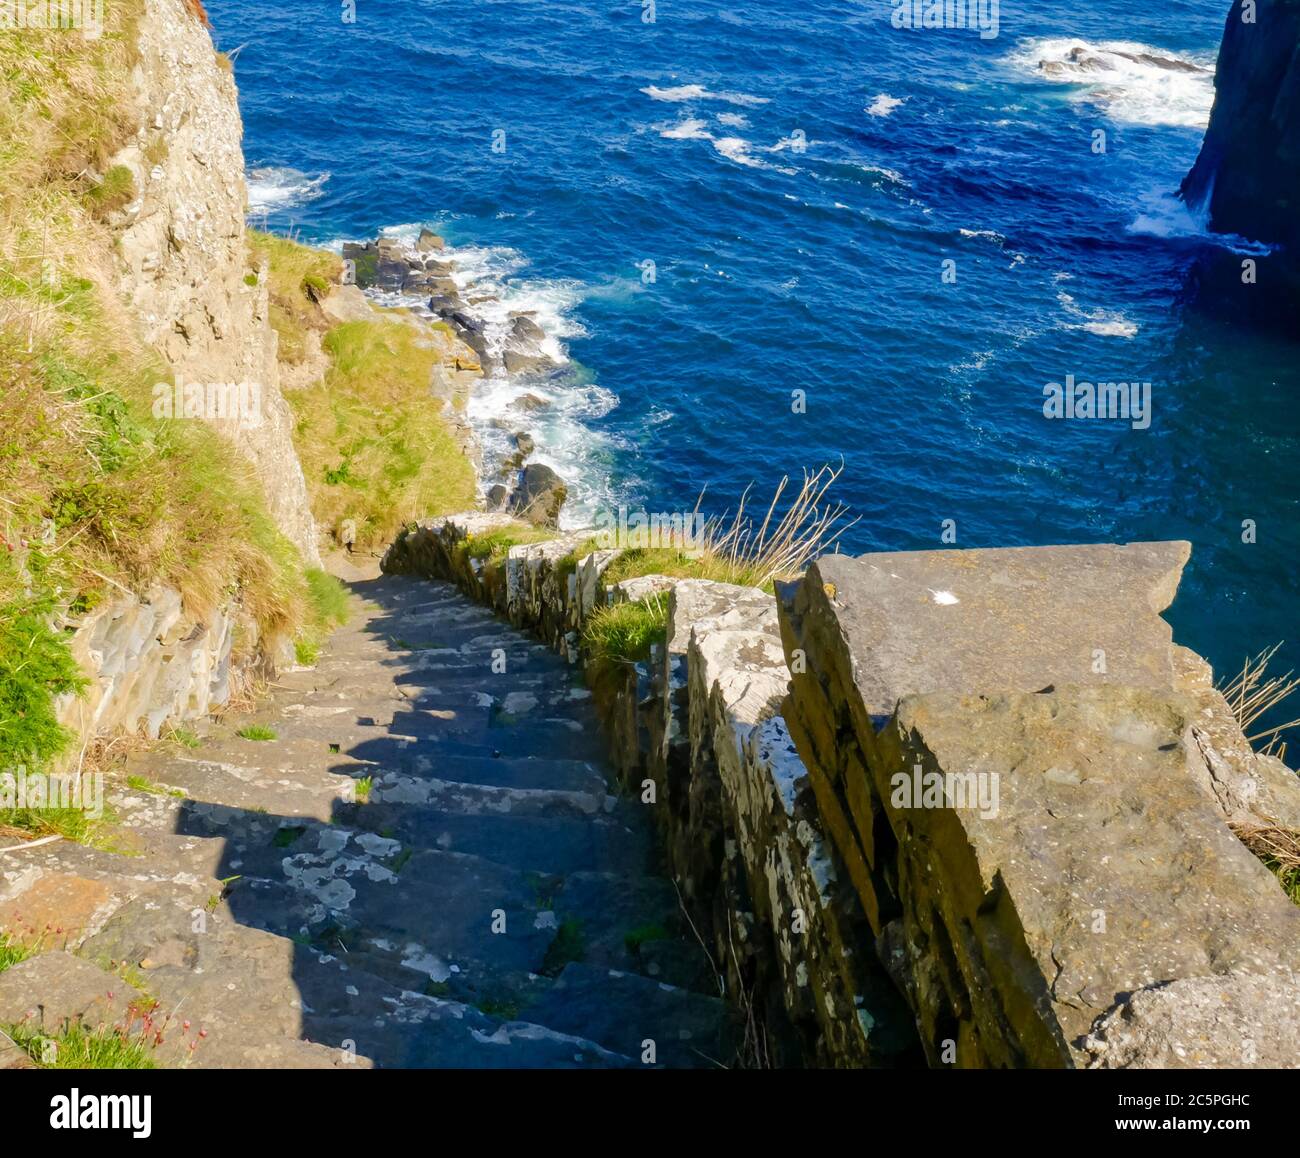 Ammira i ripidi scalini delle scogliere verso la storica baia di pesca, i gradini della Whaligoe, Caithness, le Highlands scozzesi, la Scozia, il Regno Unito Foto Stock